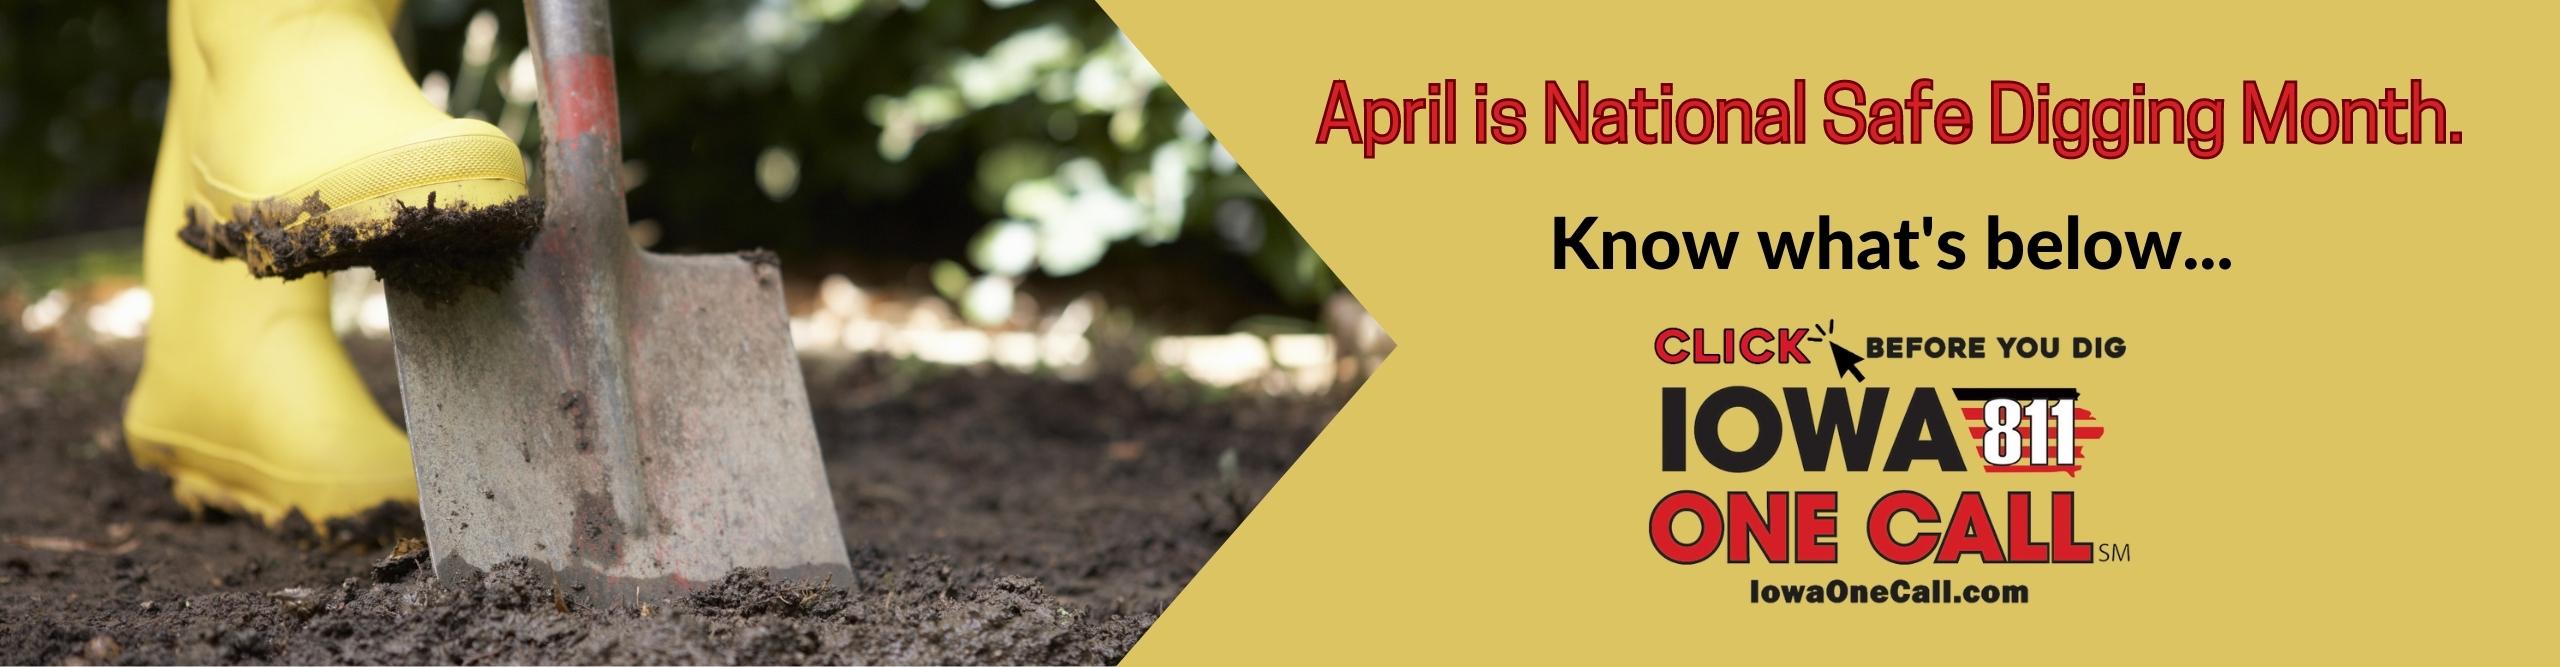 April is national safe digging month